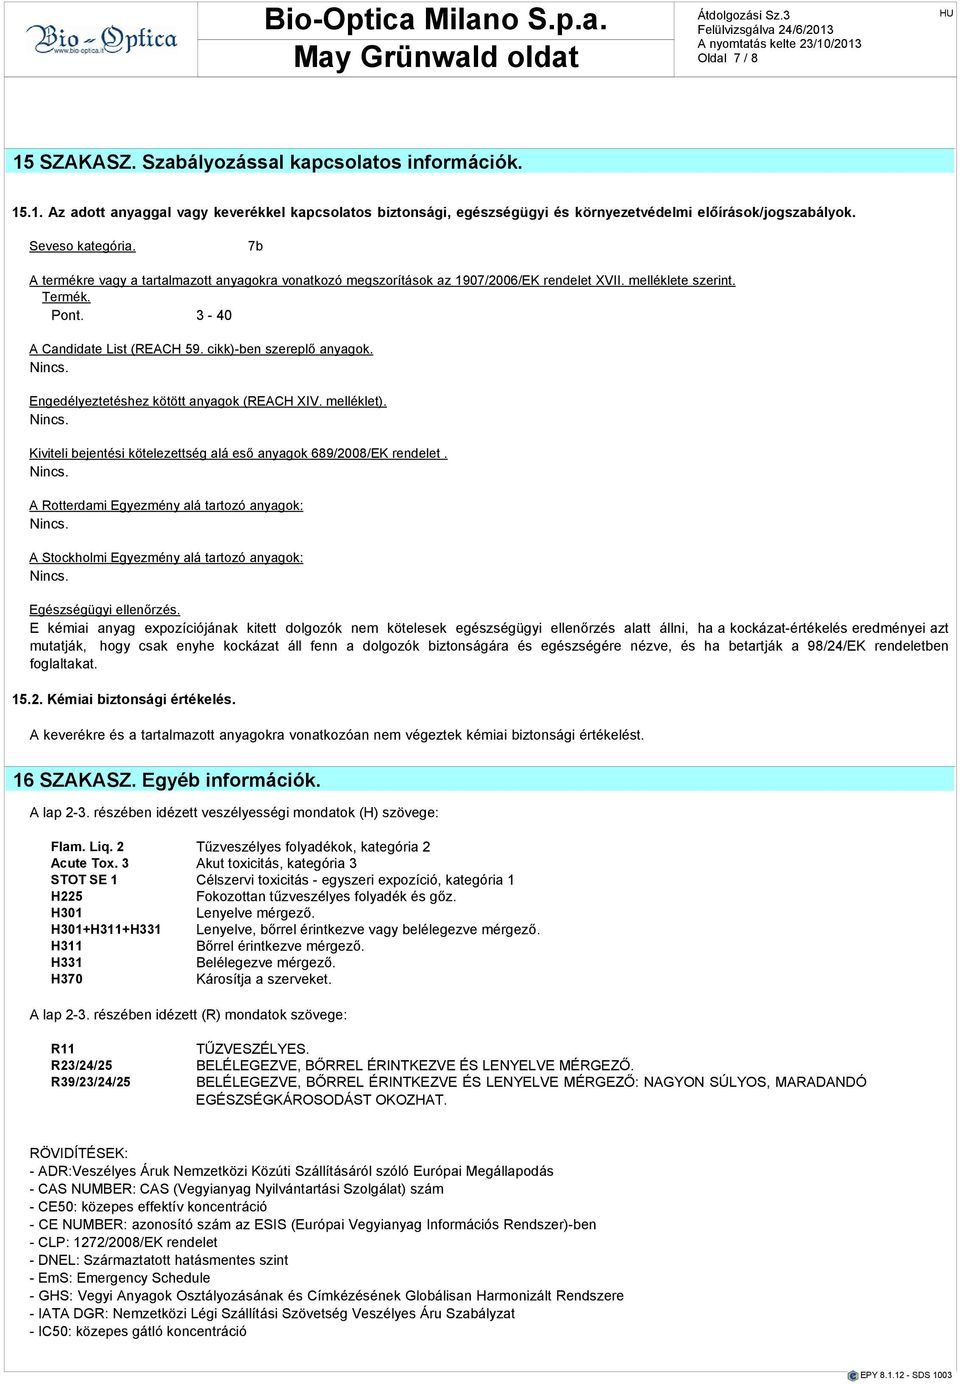 Engedélyeztethez kötött anyagok (REACH XIV. melléklet). Kiviteli bejenti kötelezettség alá eső anyagok 689/2008/EK rendelet.